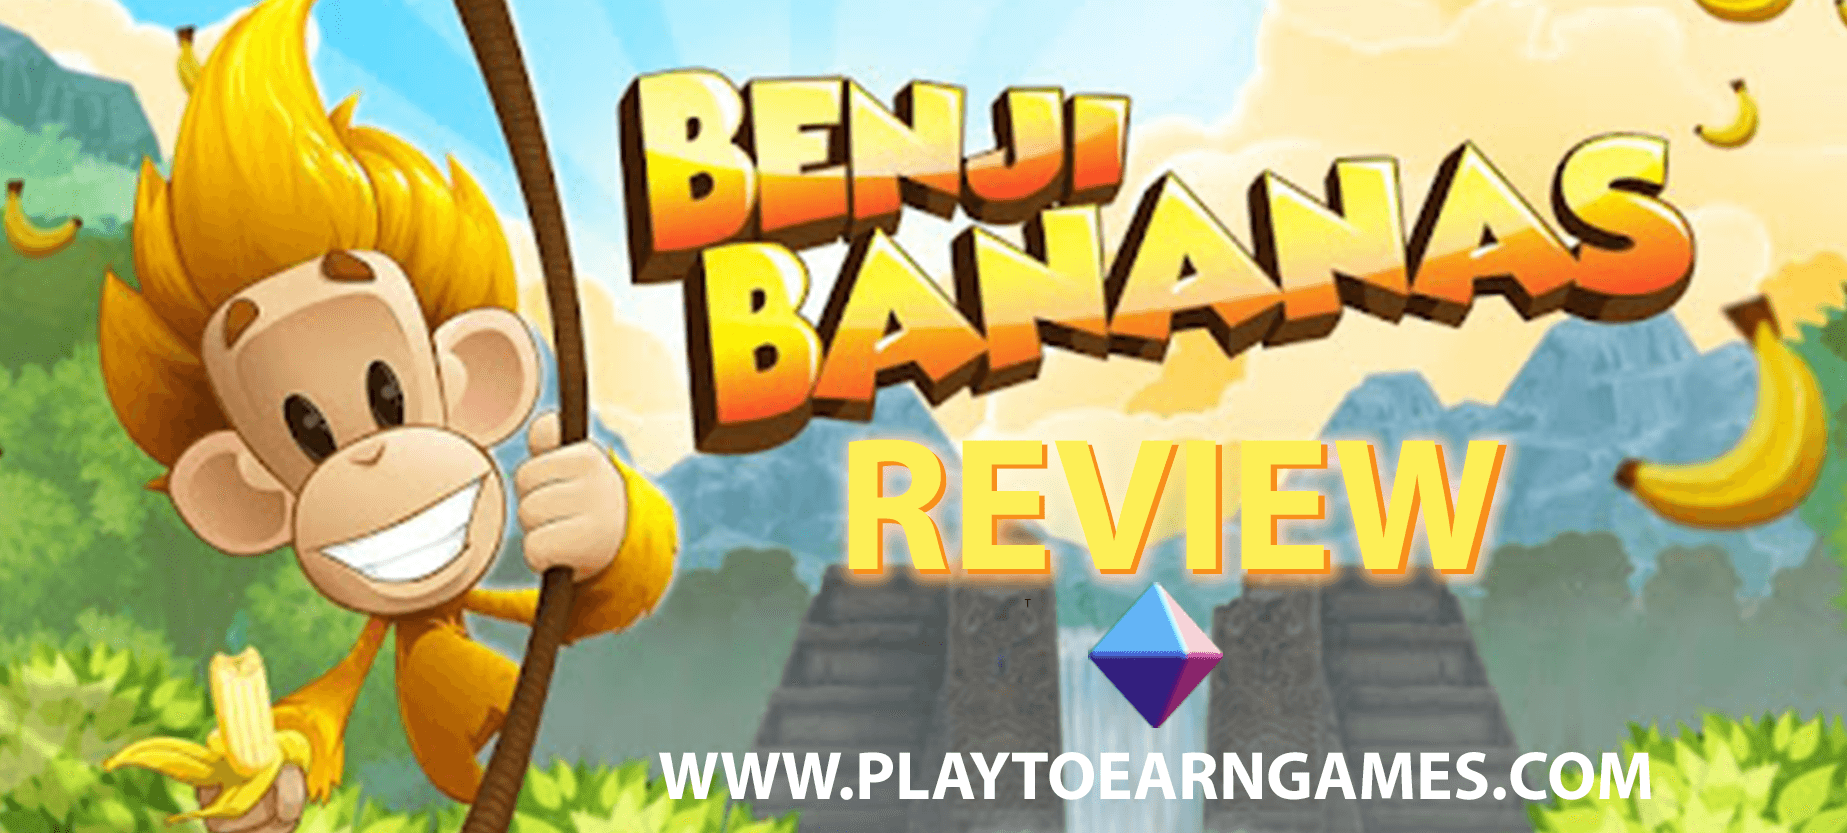 Benji Bananas - Revisão de videogame